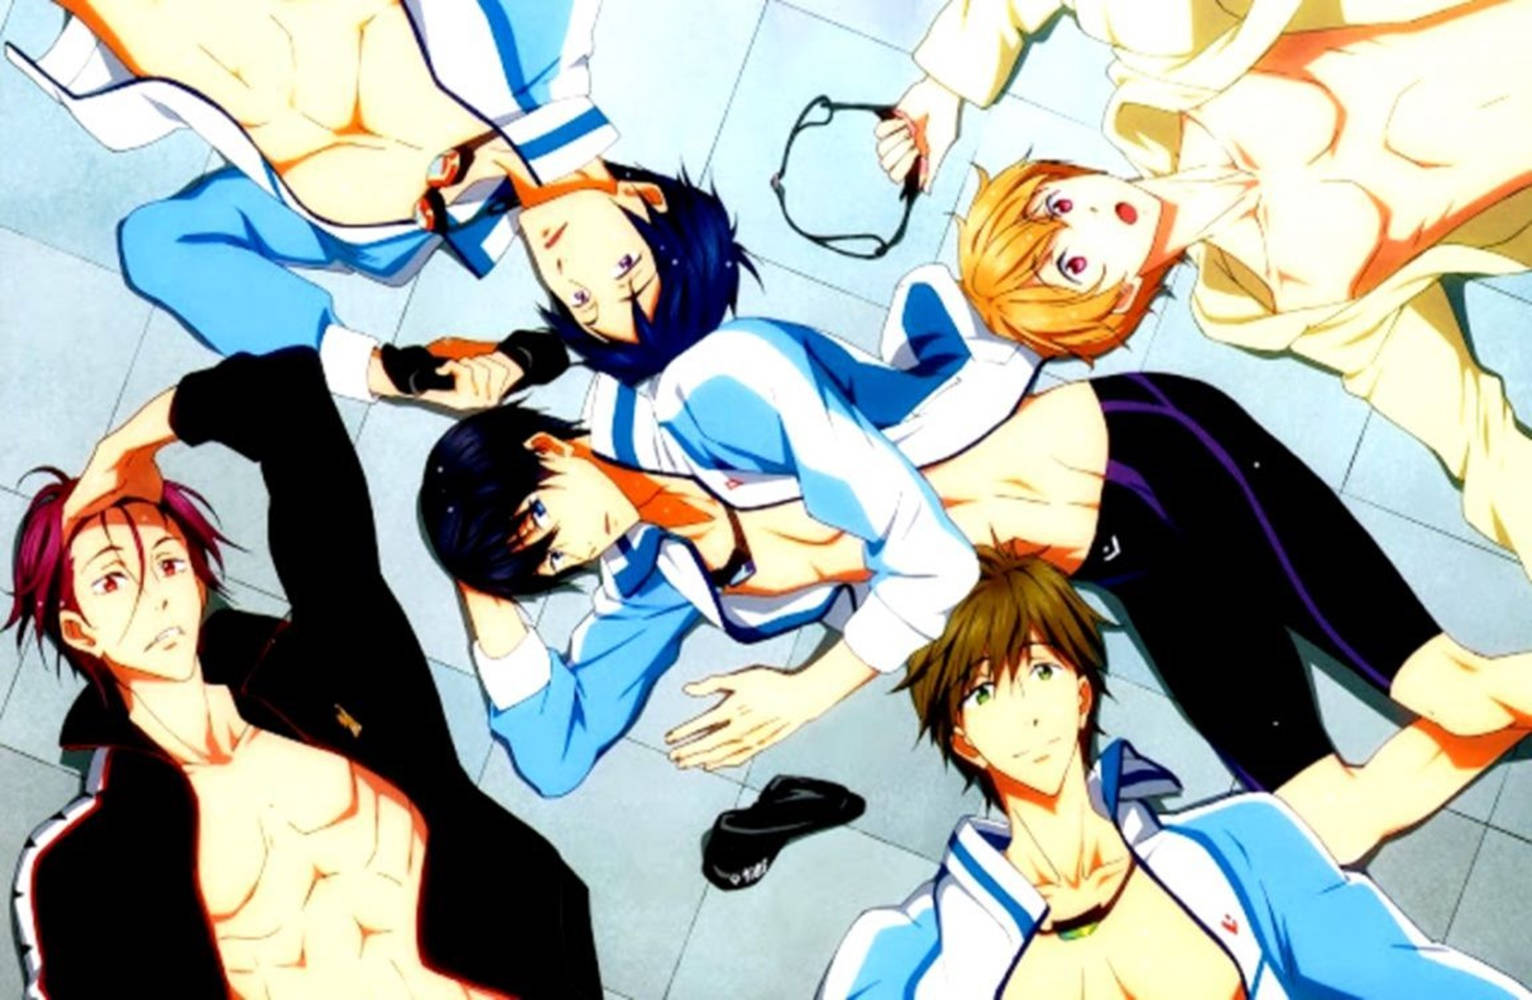 Free Anime Pfp Iwatobi Swimmers Wallpaper